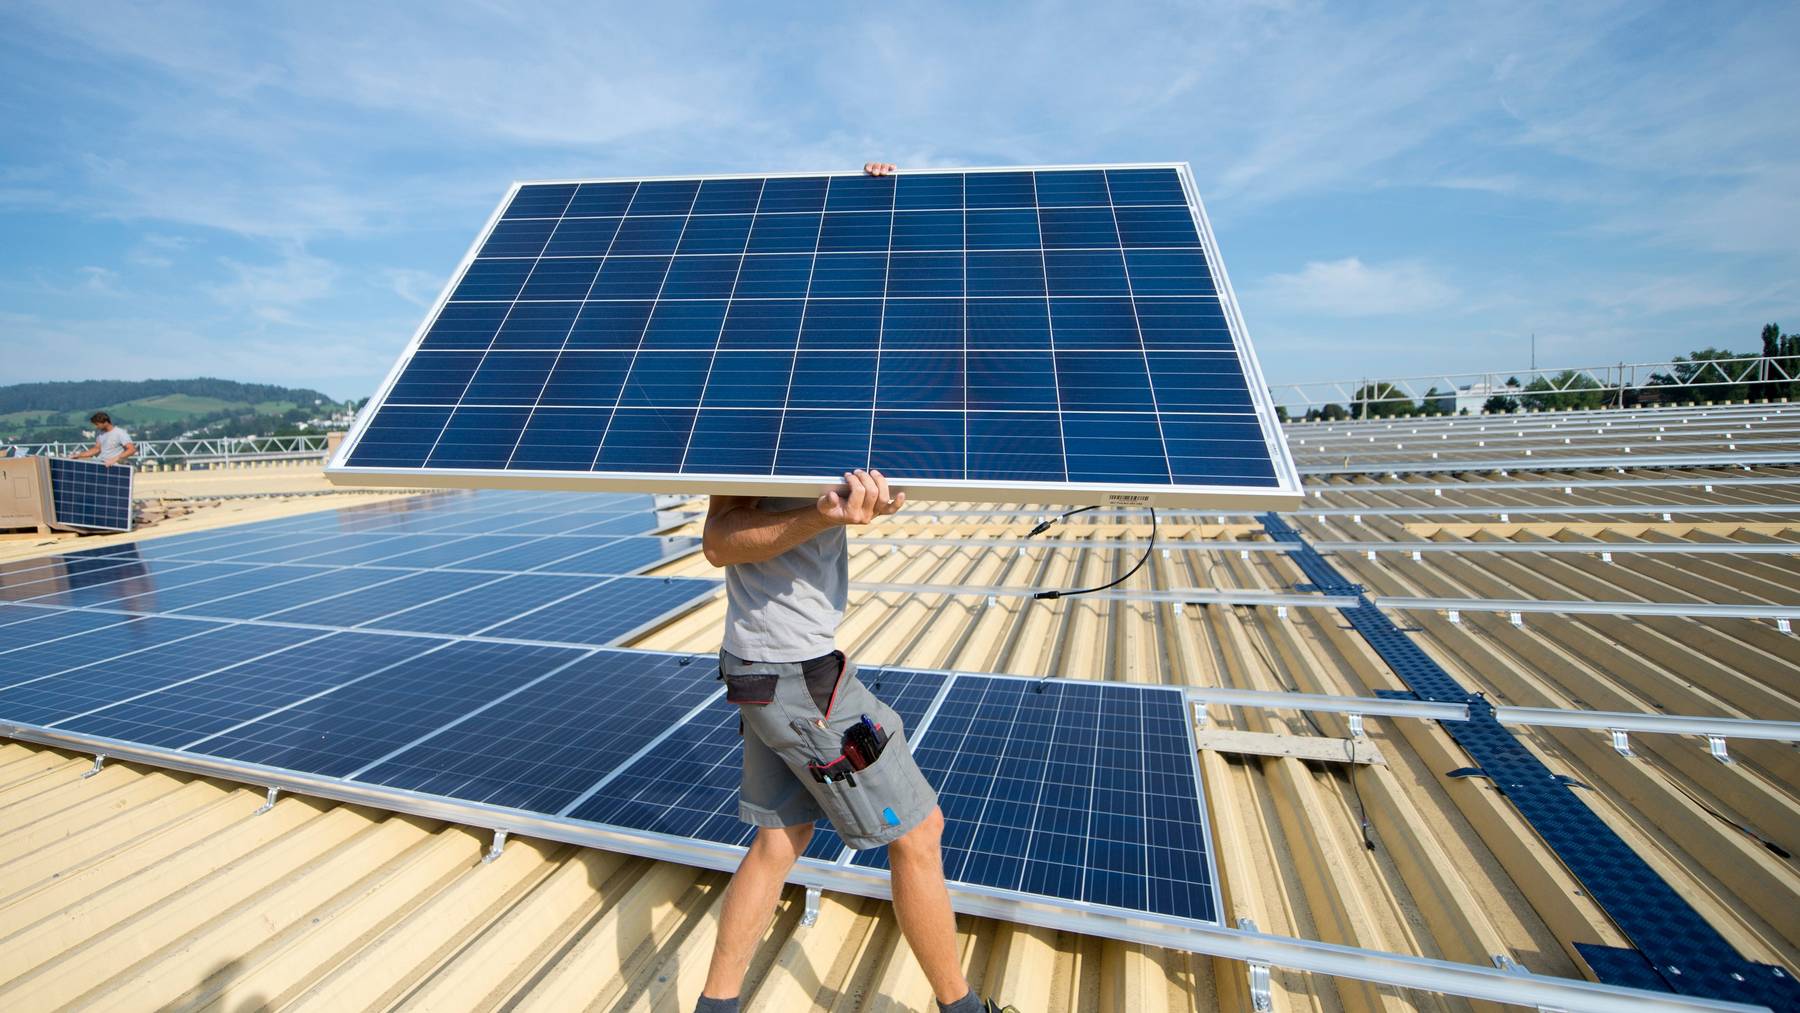 Die Solarenergie soll gefördert werden, findet die Mehrheit der Befragten.